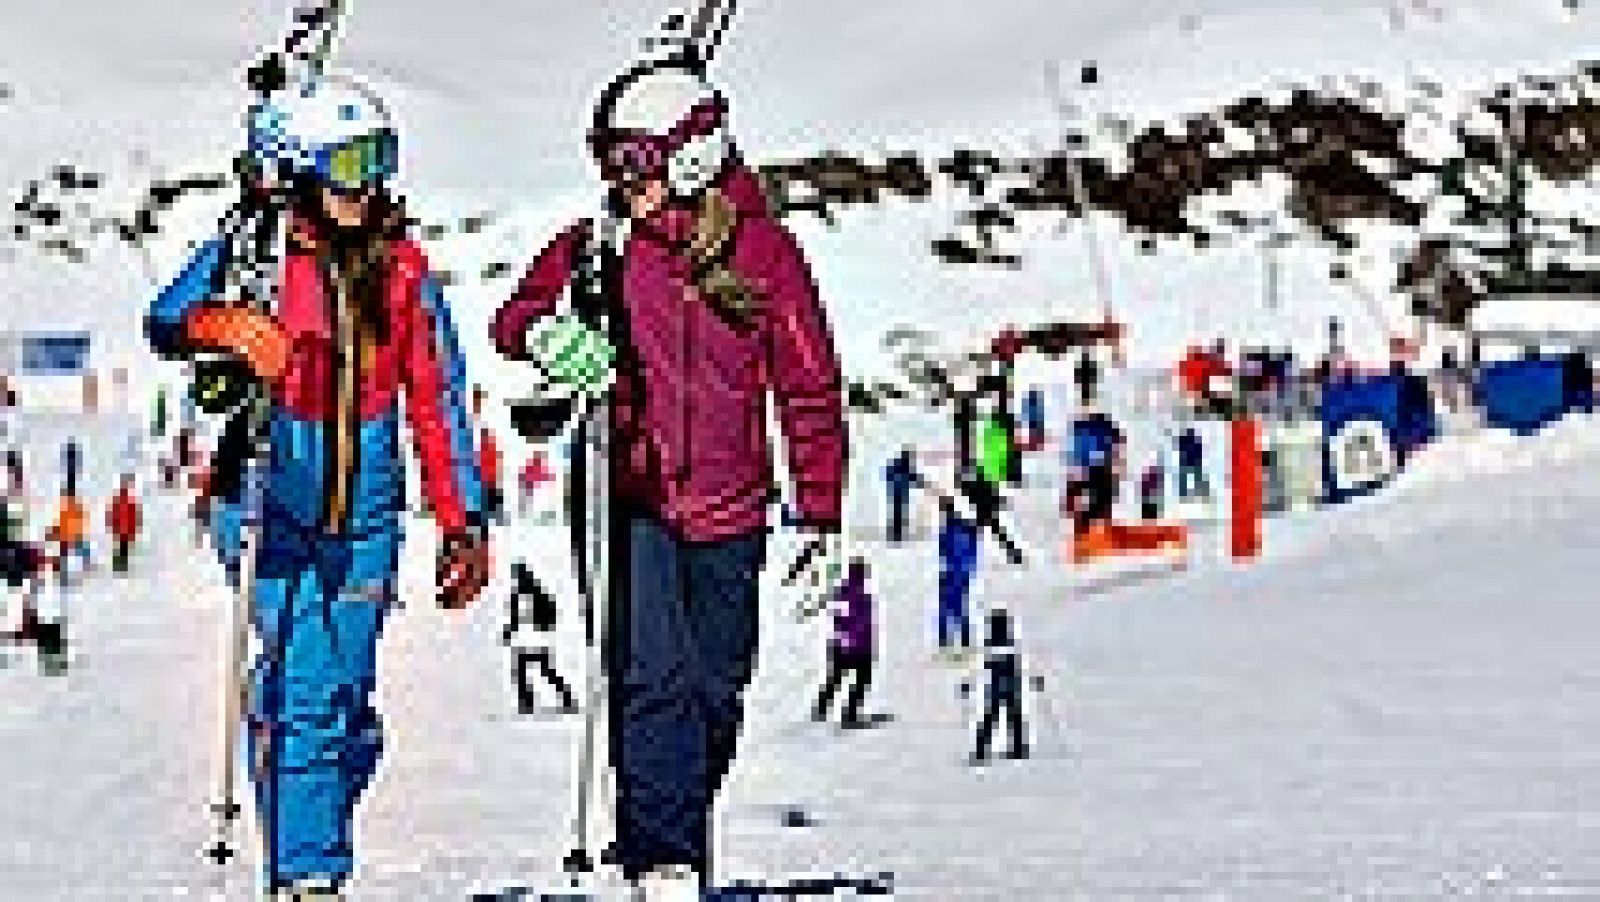 La estación leridana de Baqueira Beret, recientemente galardonada por el Consejo Superior de Deportes (CSD) con la Medalla de Bronce al Mérito Deportivo, presenta esta temporada 155 kilómetros de dominio esquiable.